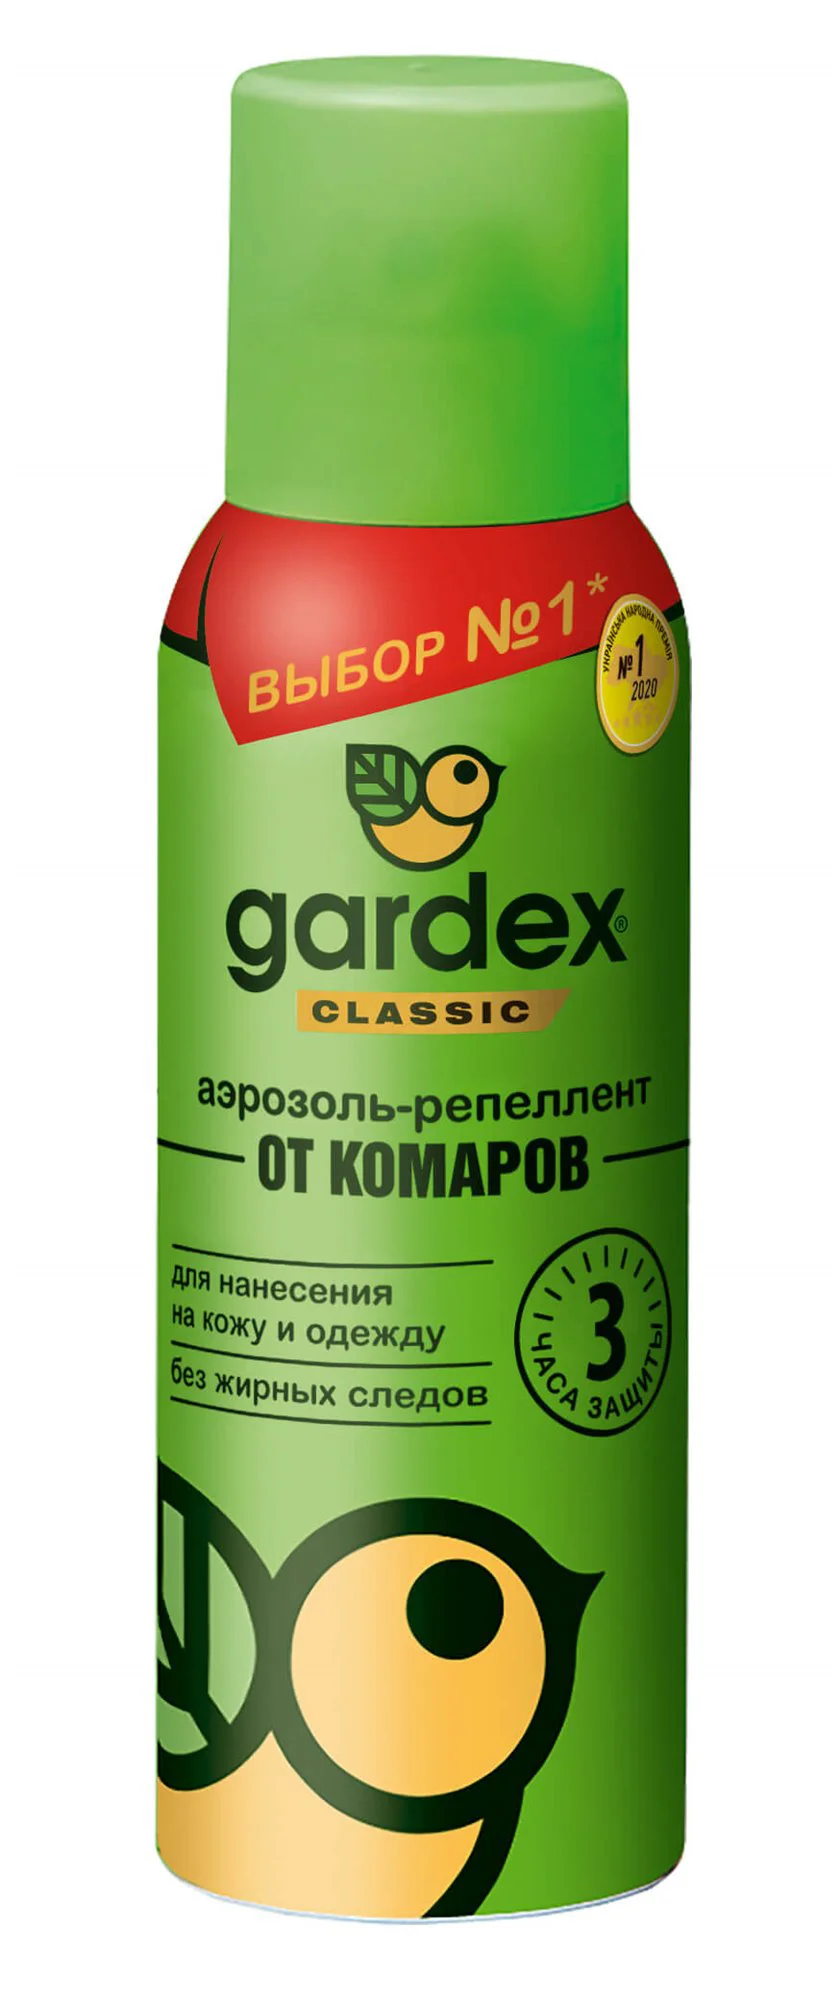 Аэрозоль-репеллент против комаров Gardex Classic, 100 мл